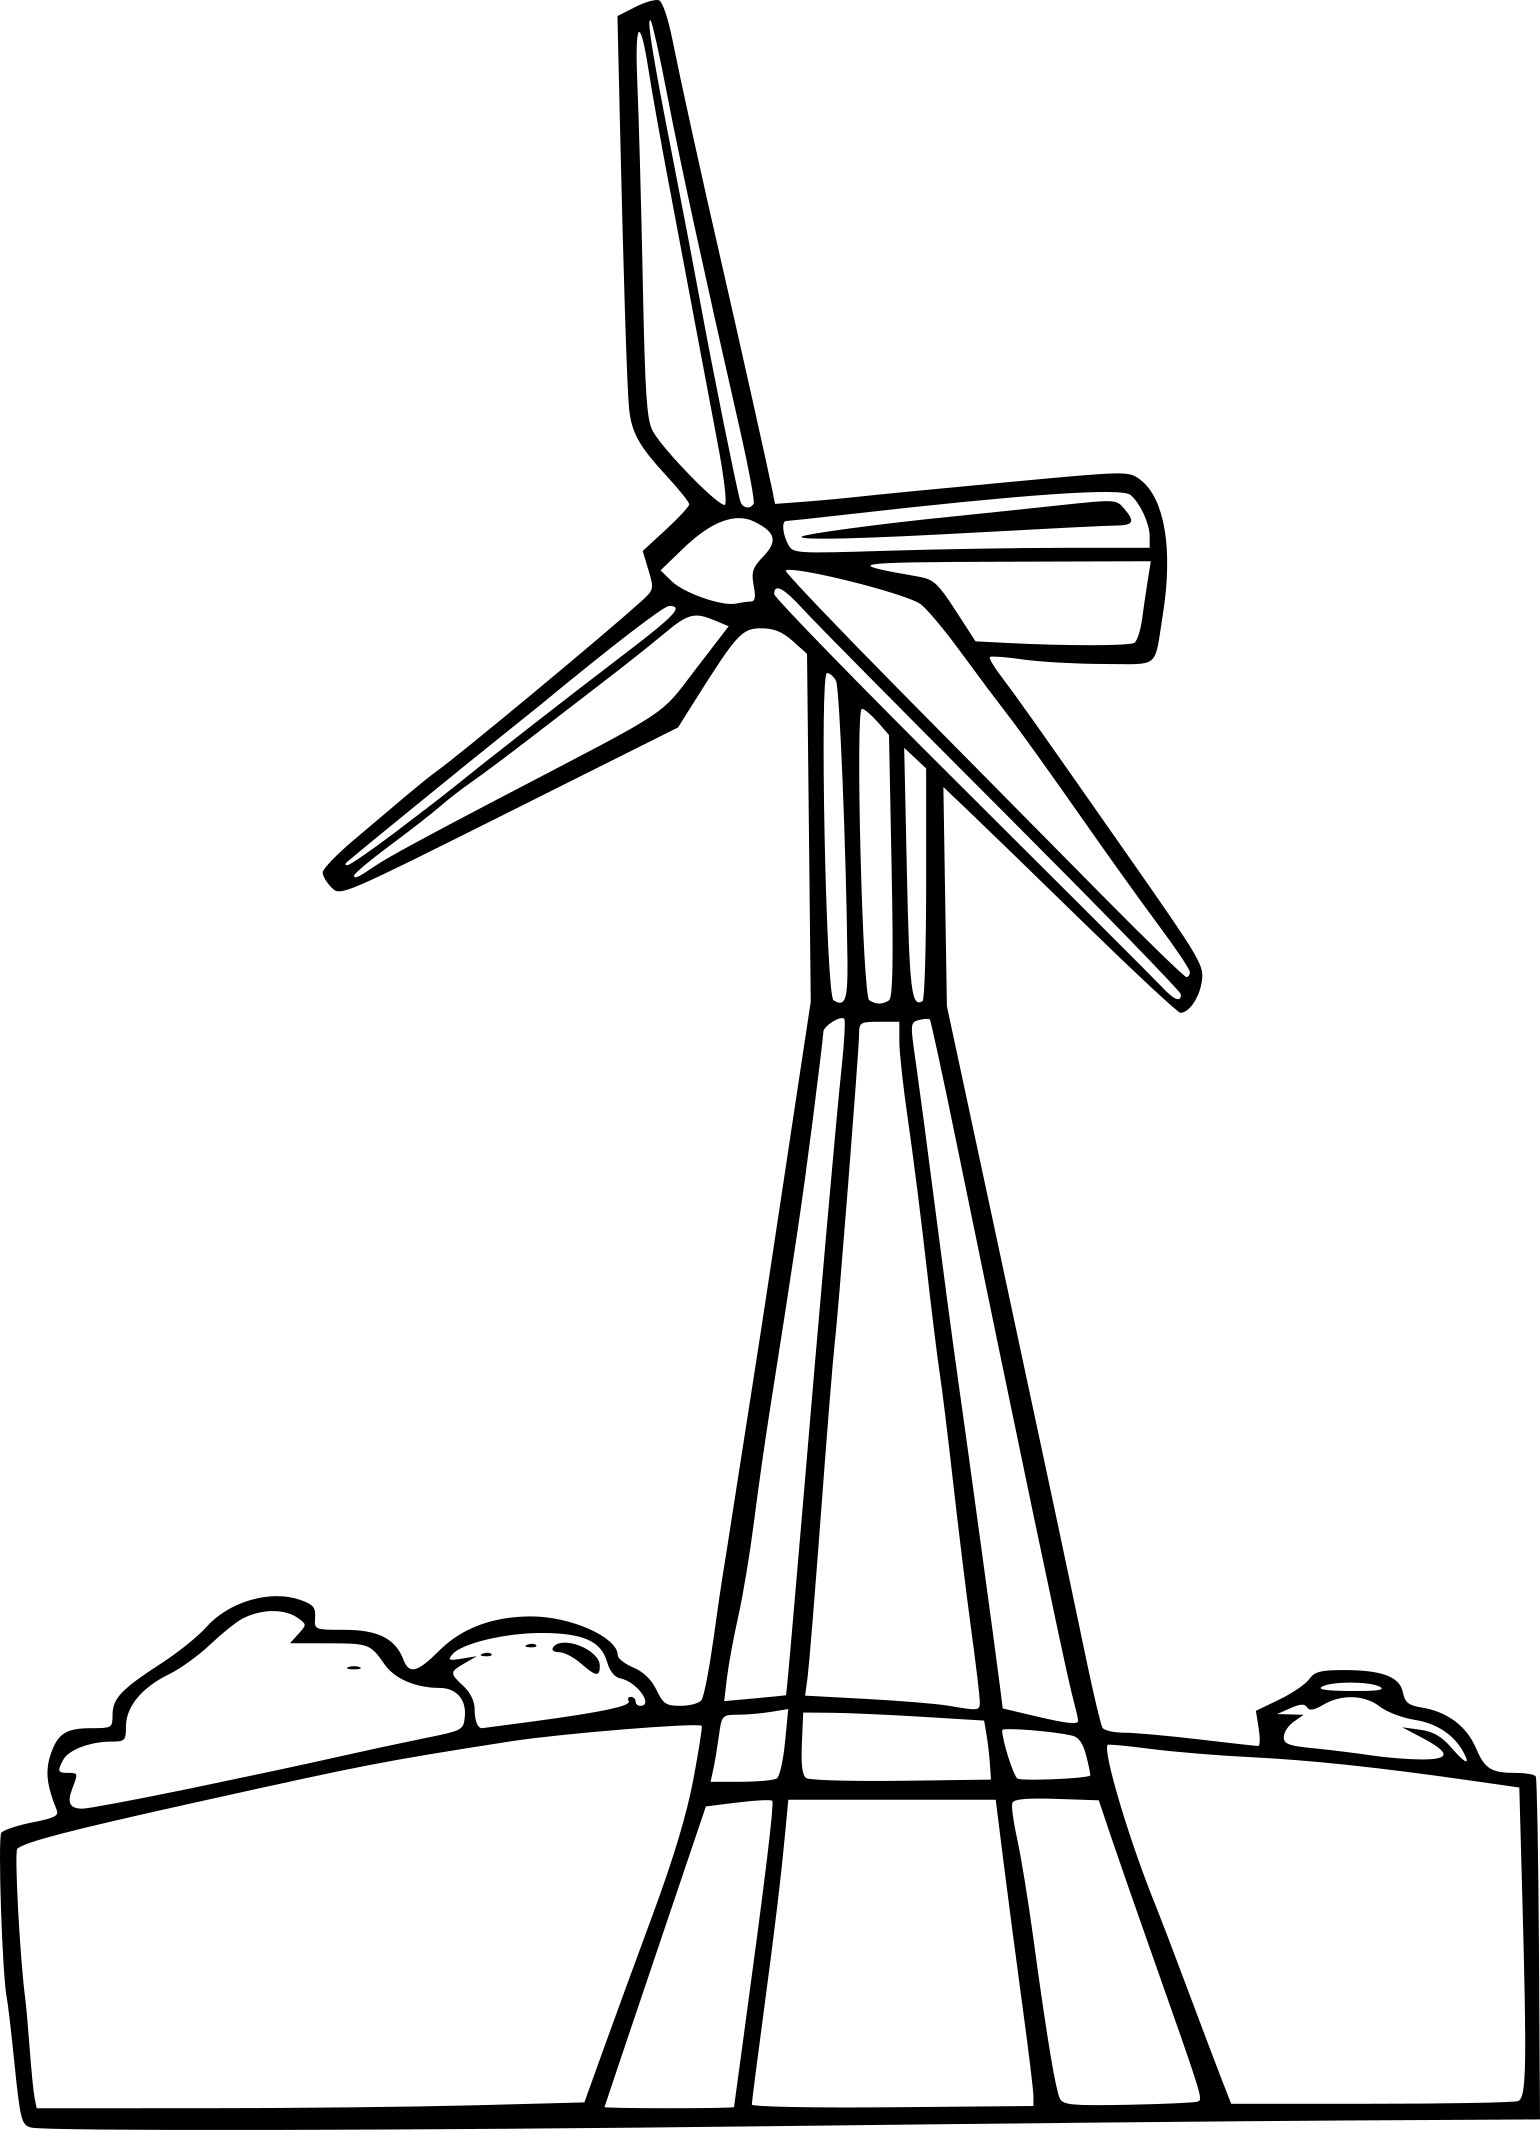 Disegno di Turbina eolica da colorare